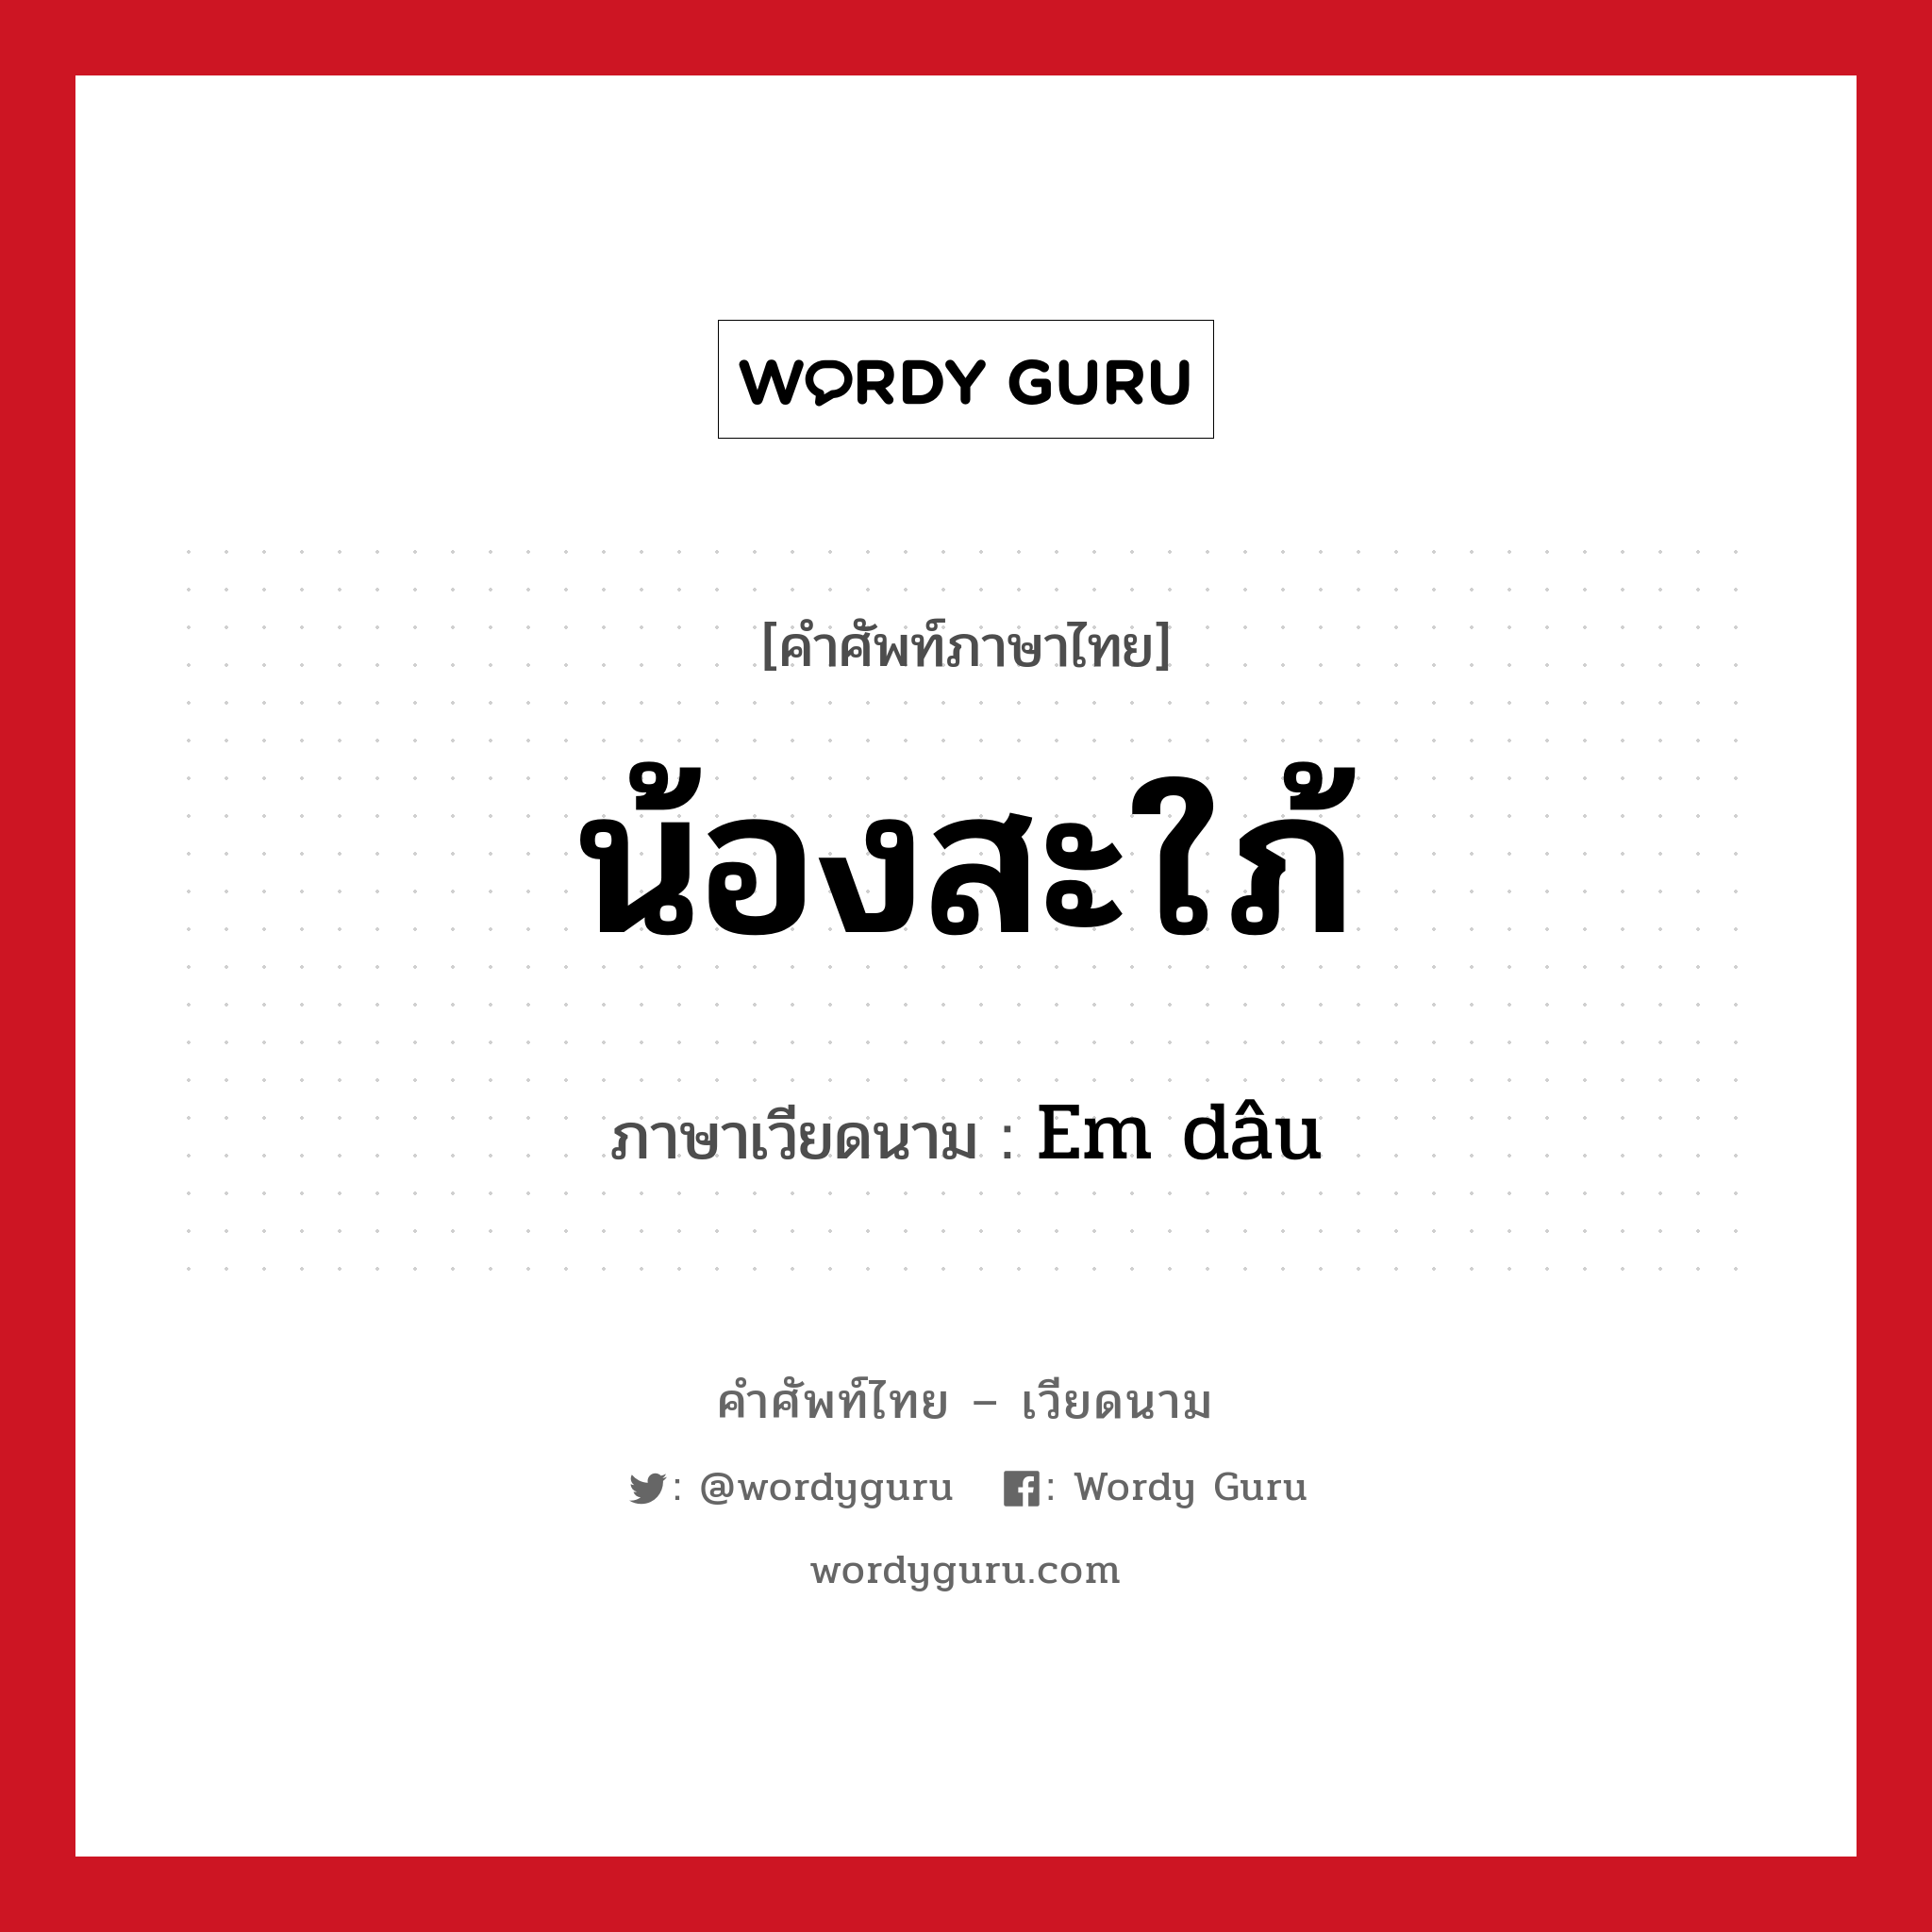 น้องสะใภ้ ภาษาเวียดนามคืออะไร, คำศัพท์ภาษาไทย - เวียดนาม น้องสะใภ้ ภาษาเวียดนาม Em dâu หมวด เครือญาติ หมวด เครือญาติ